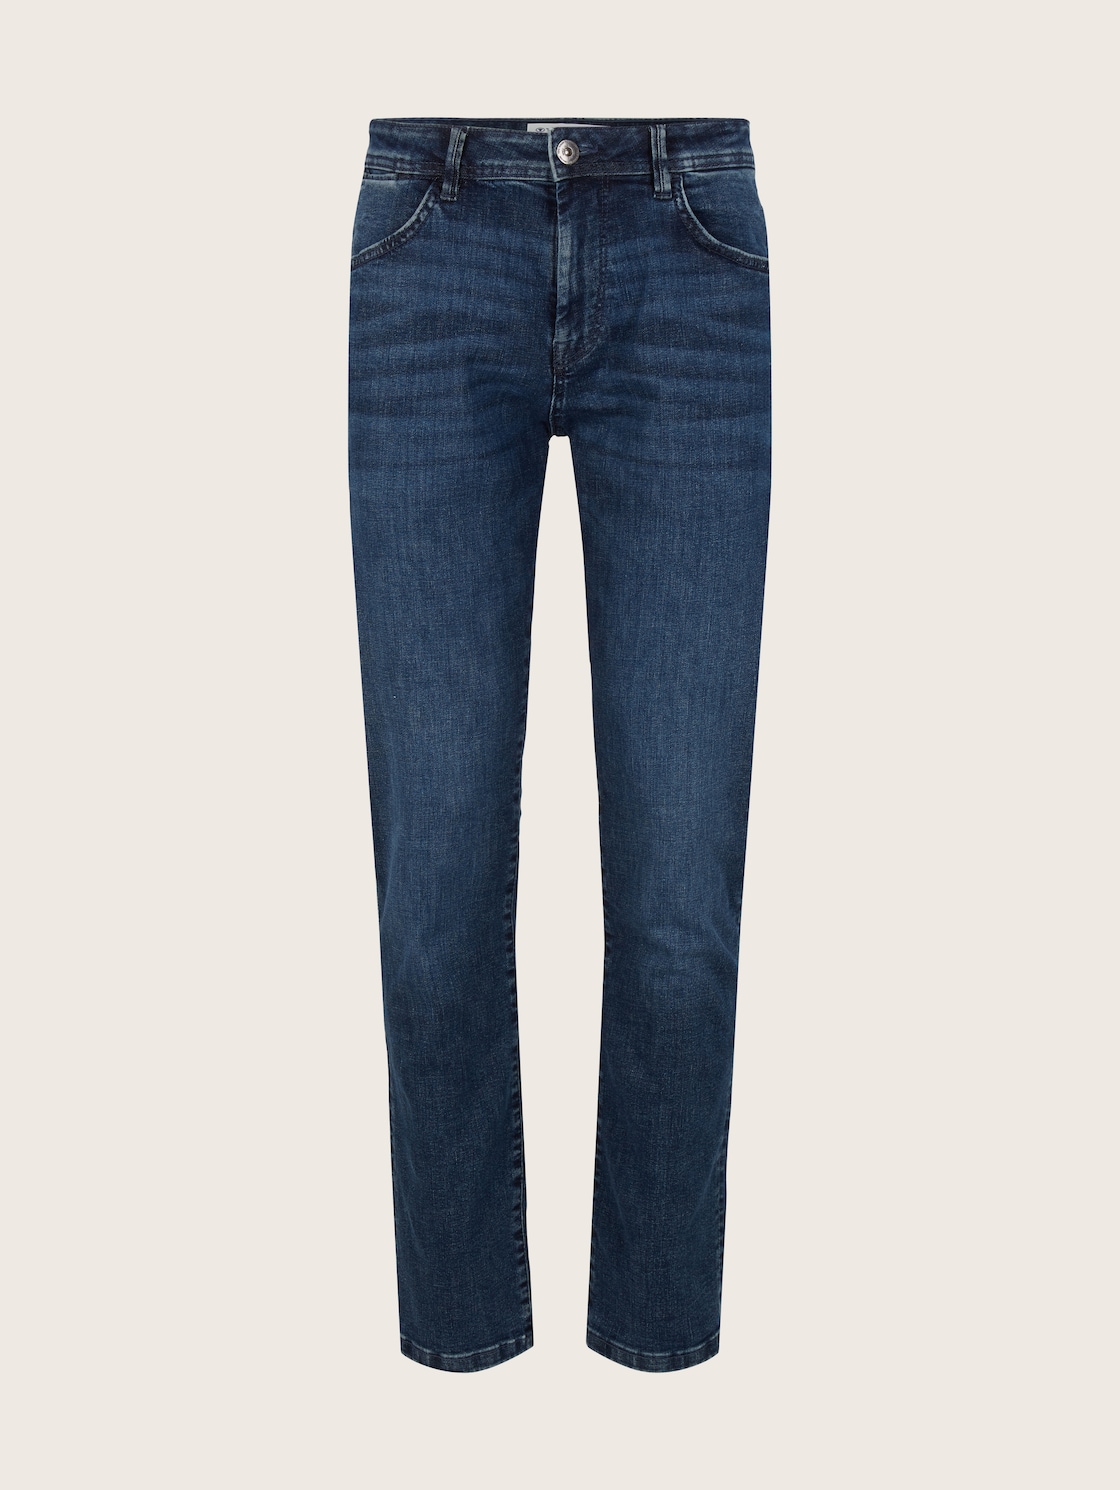 TOM TAILOR Herren Regular Slim Josh Jeans mit LYCRA ®, blau, Gr. 38/34 von Tom Tailor